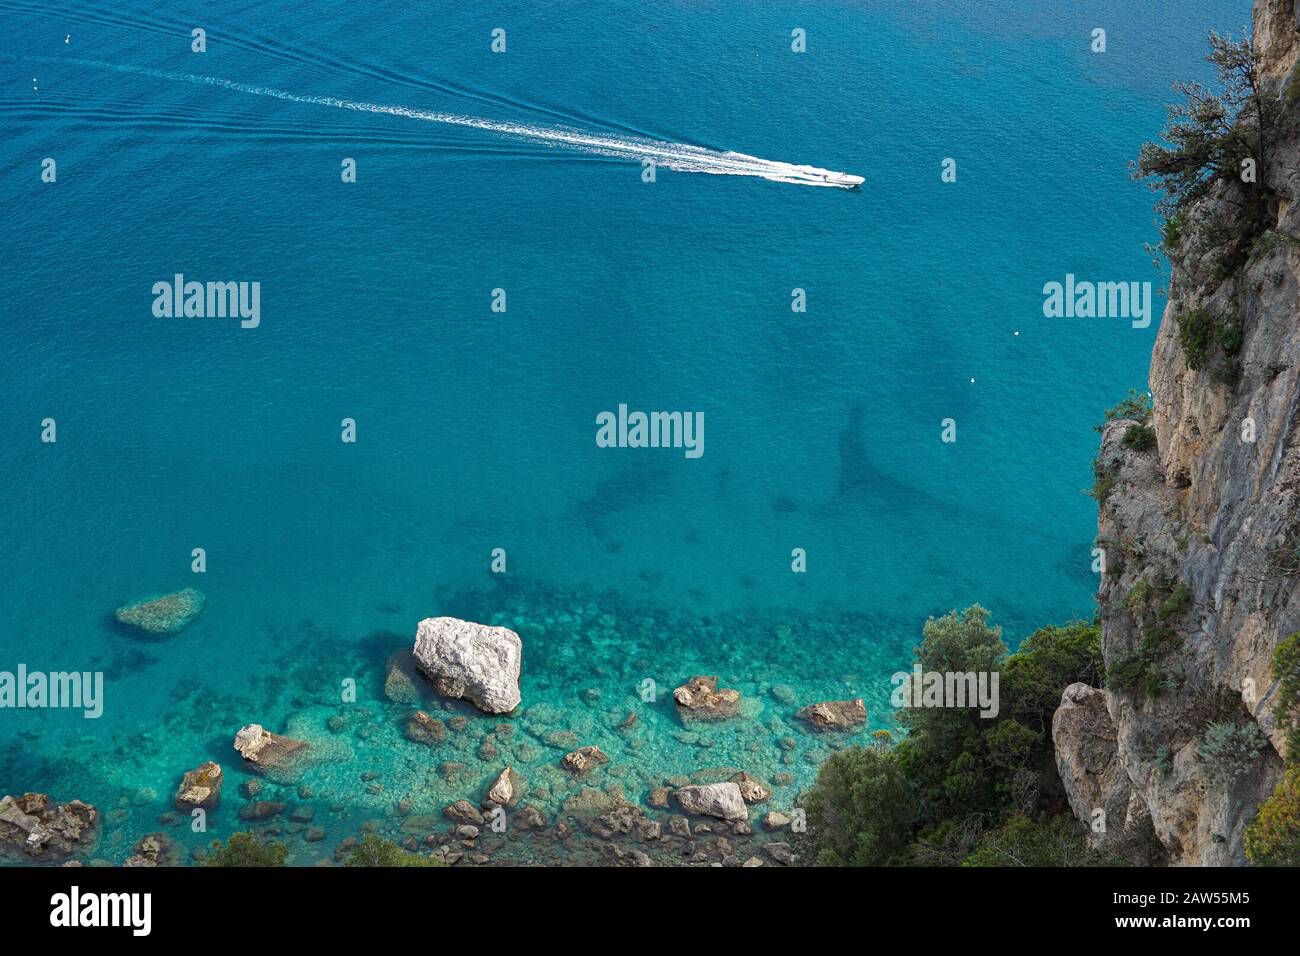 Das türkisfarbene Meer, das von oben an der schönen Amalfiküste eingefangen wurde Stockfoto